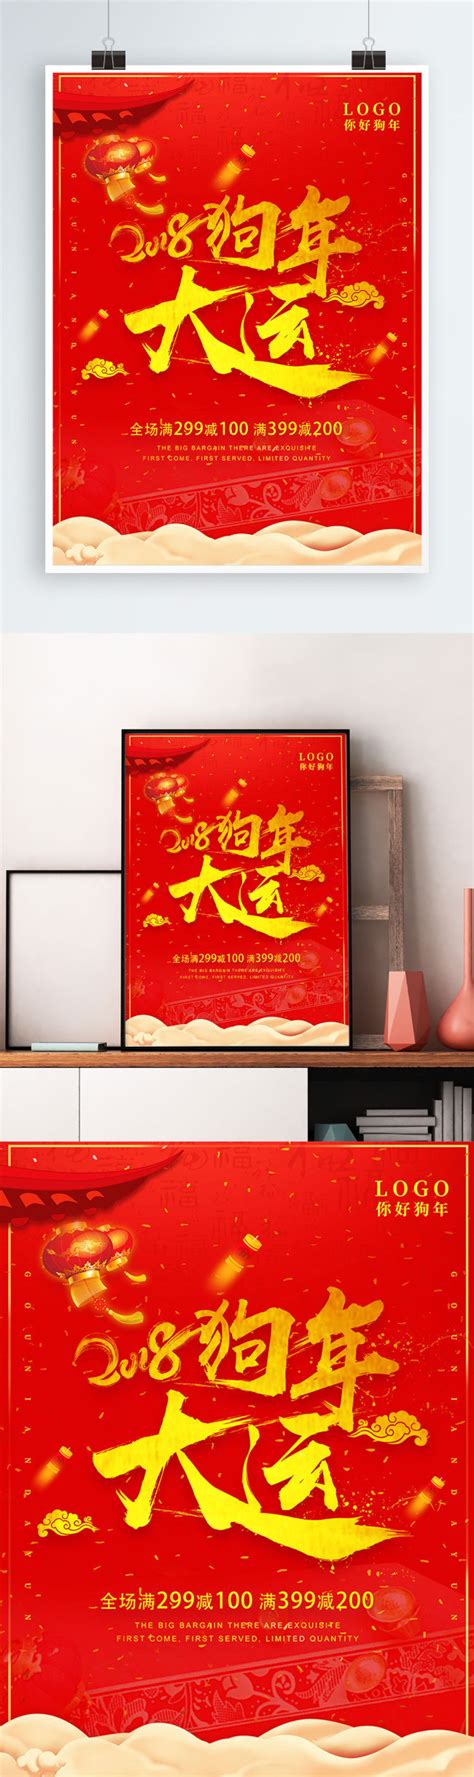 2018狗年大运海报设计海报模板下载-千库网